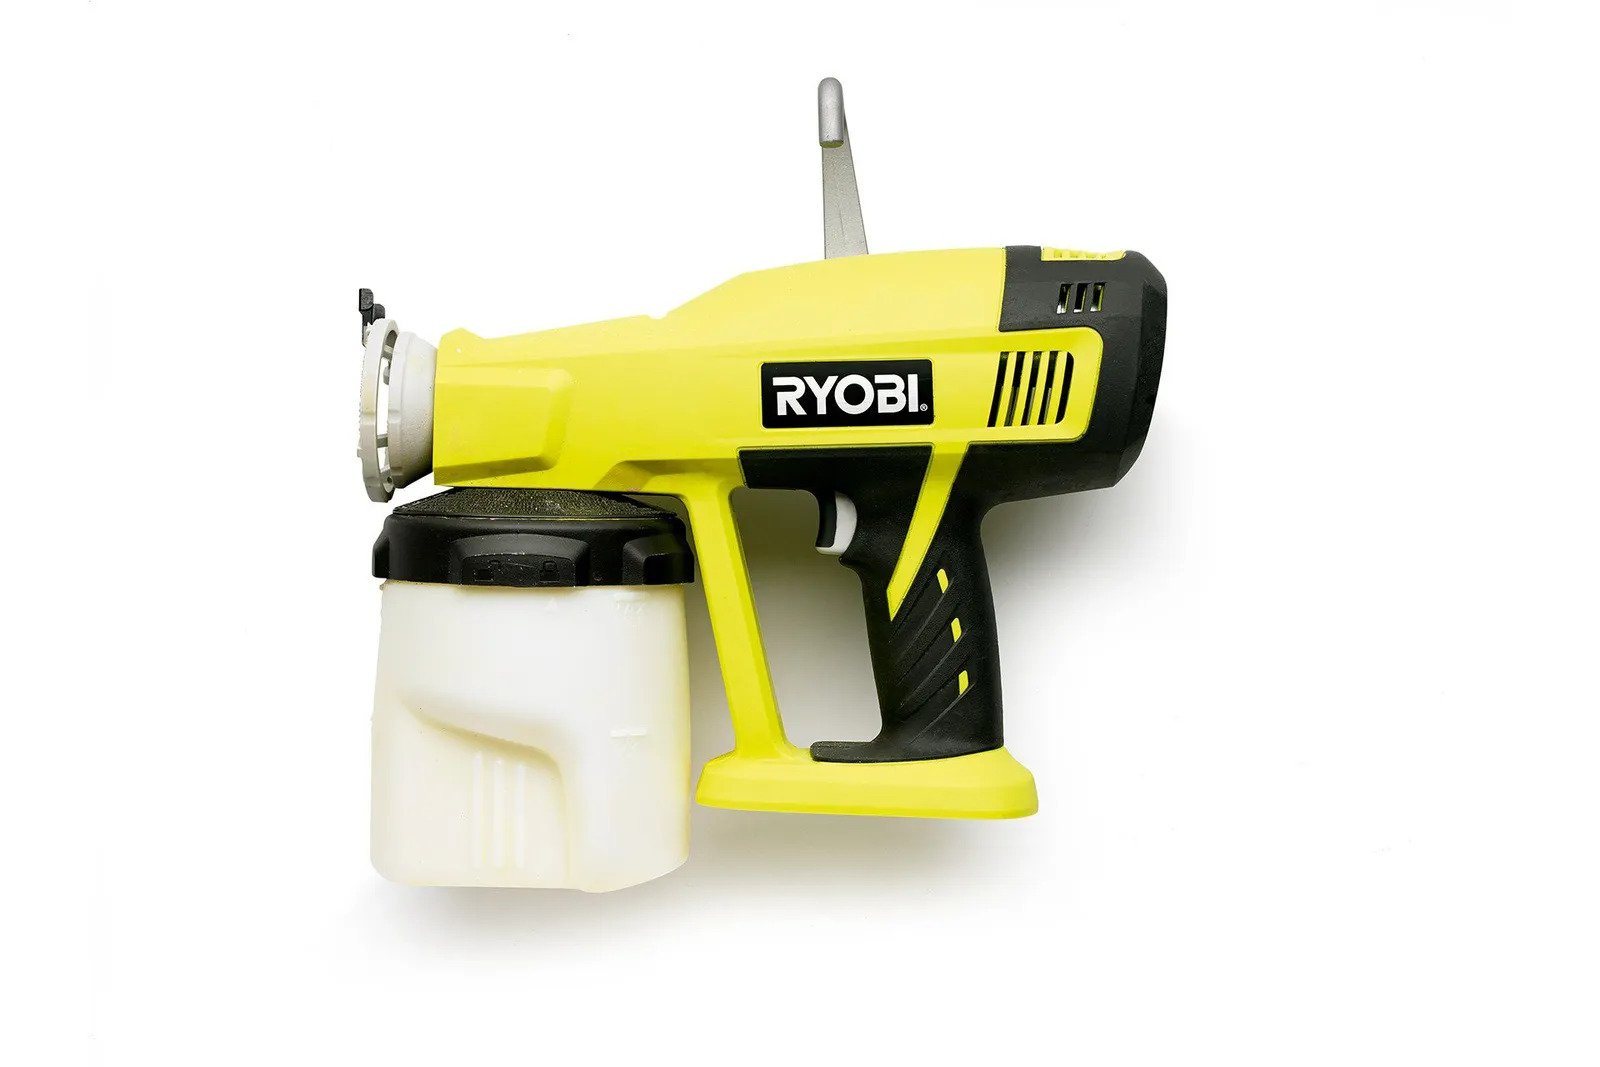 How To Use Ryobi Paint Sprayer